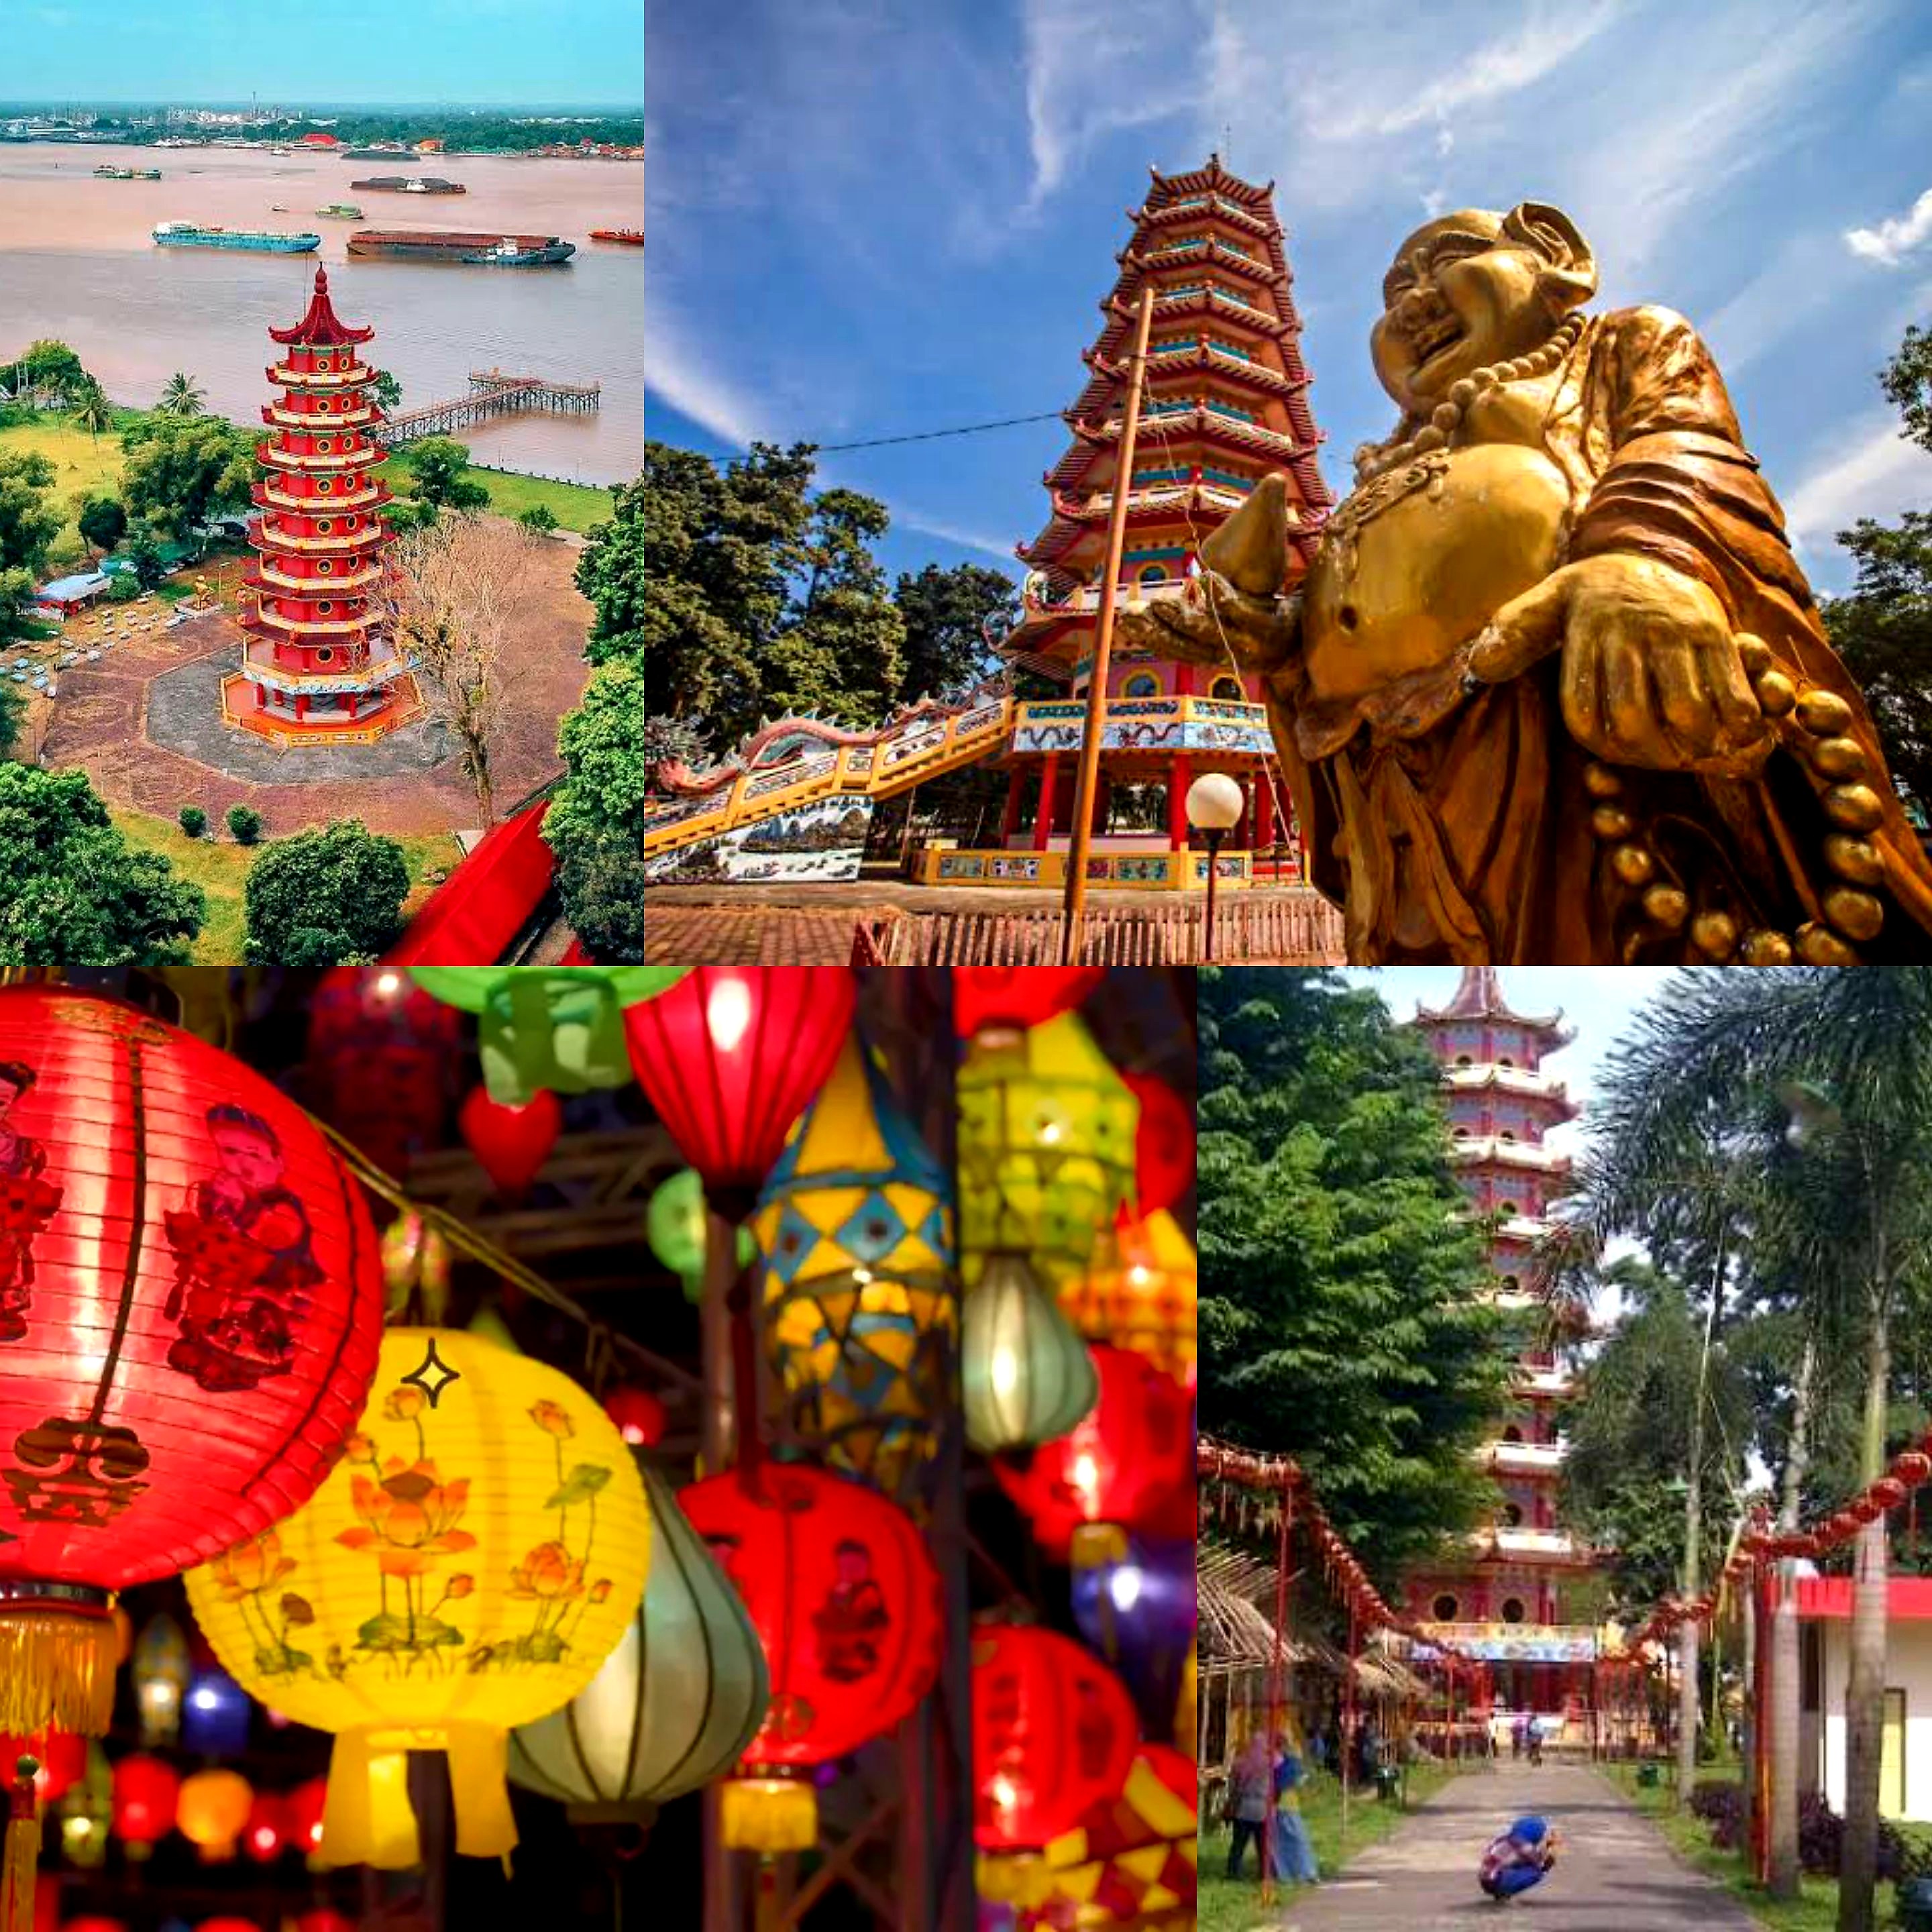  Melintasi Sejarah dan Alam, Inilah 7 Keajaiban Destinasi Wisata Palembang, Berangkat!